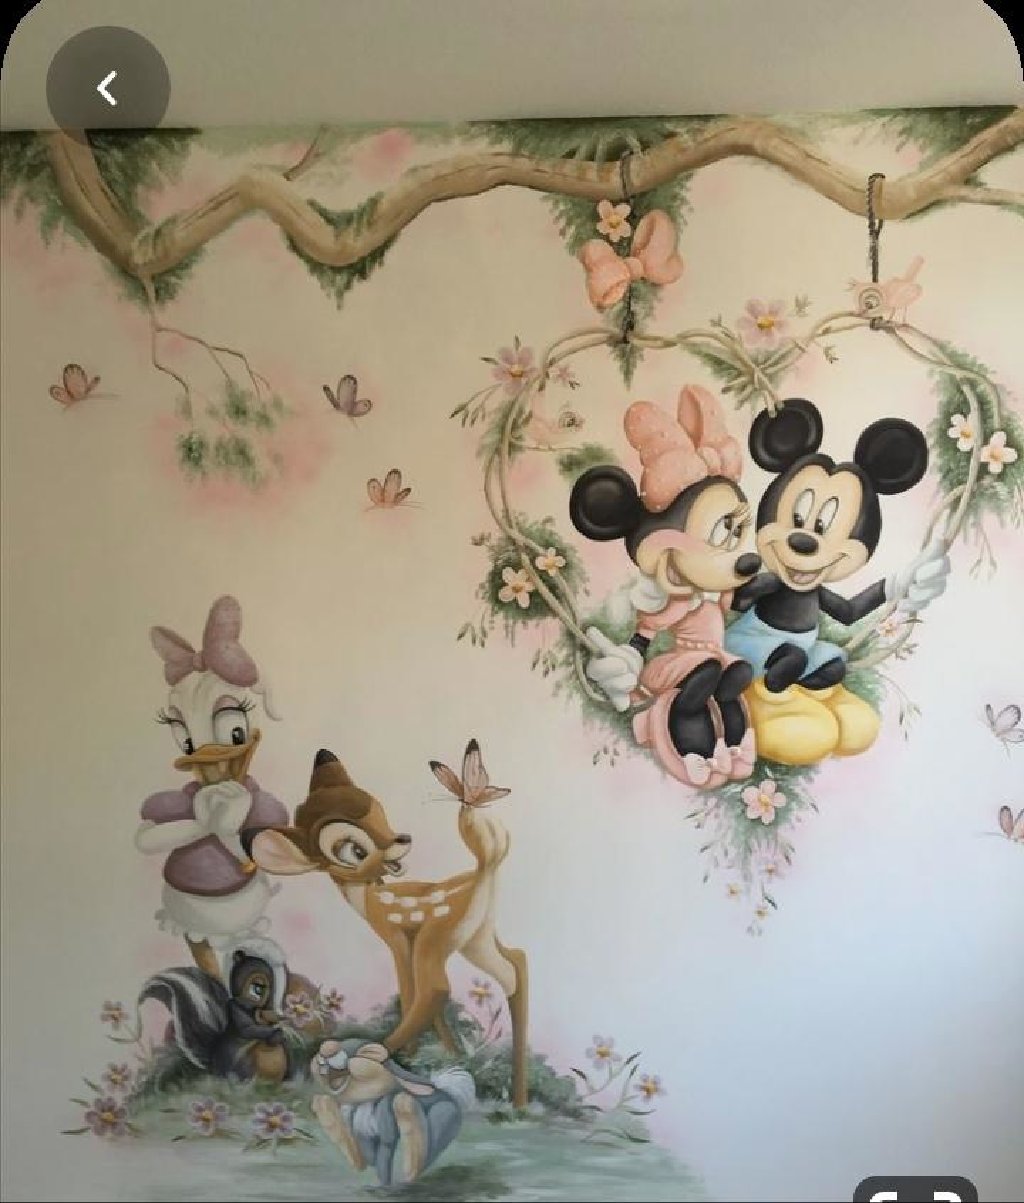 рисунки на стене детской комнаты фото